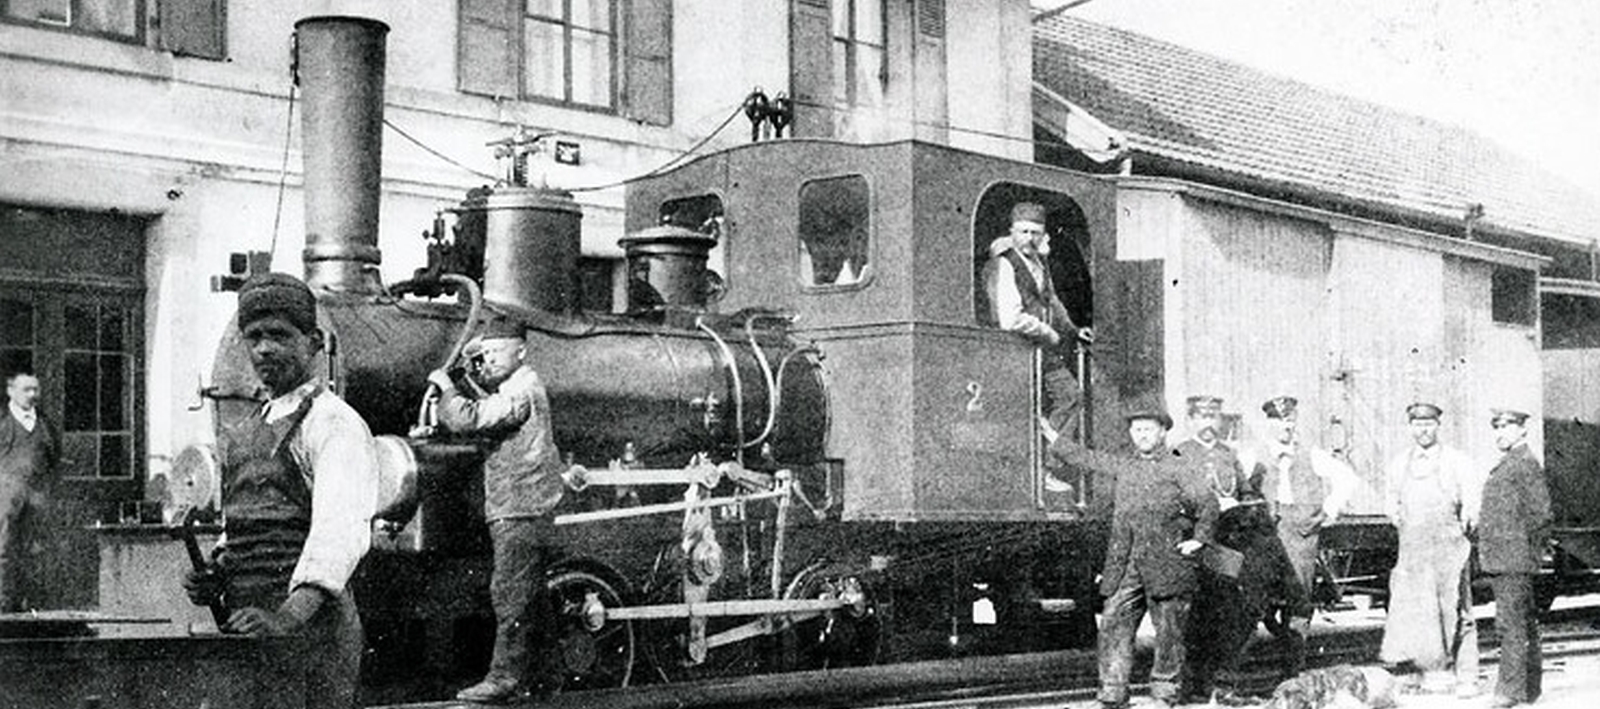 No. 2 around 1910 in Tramelan